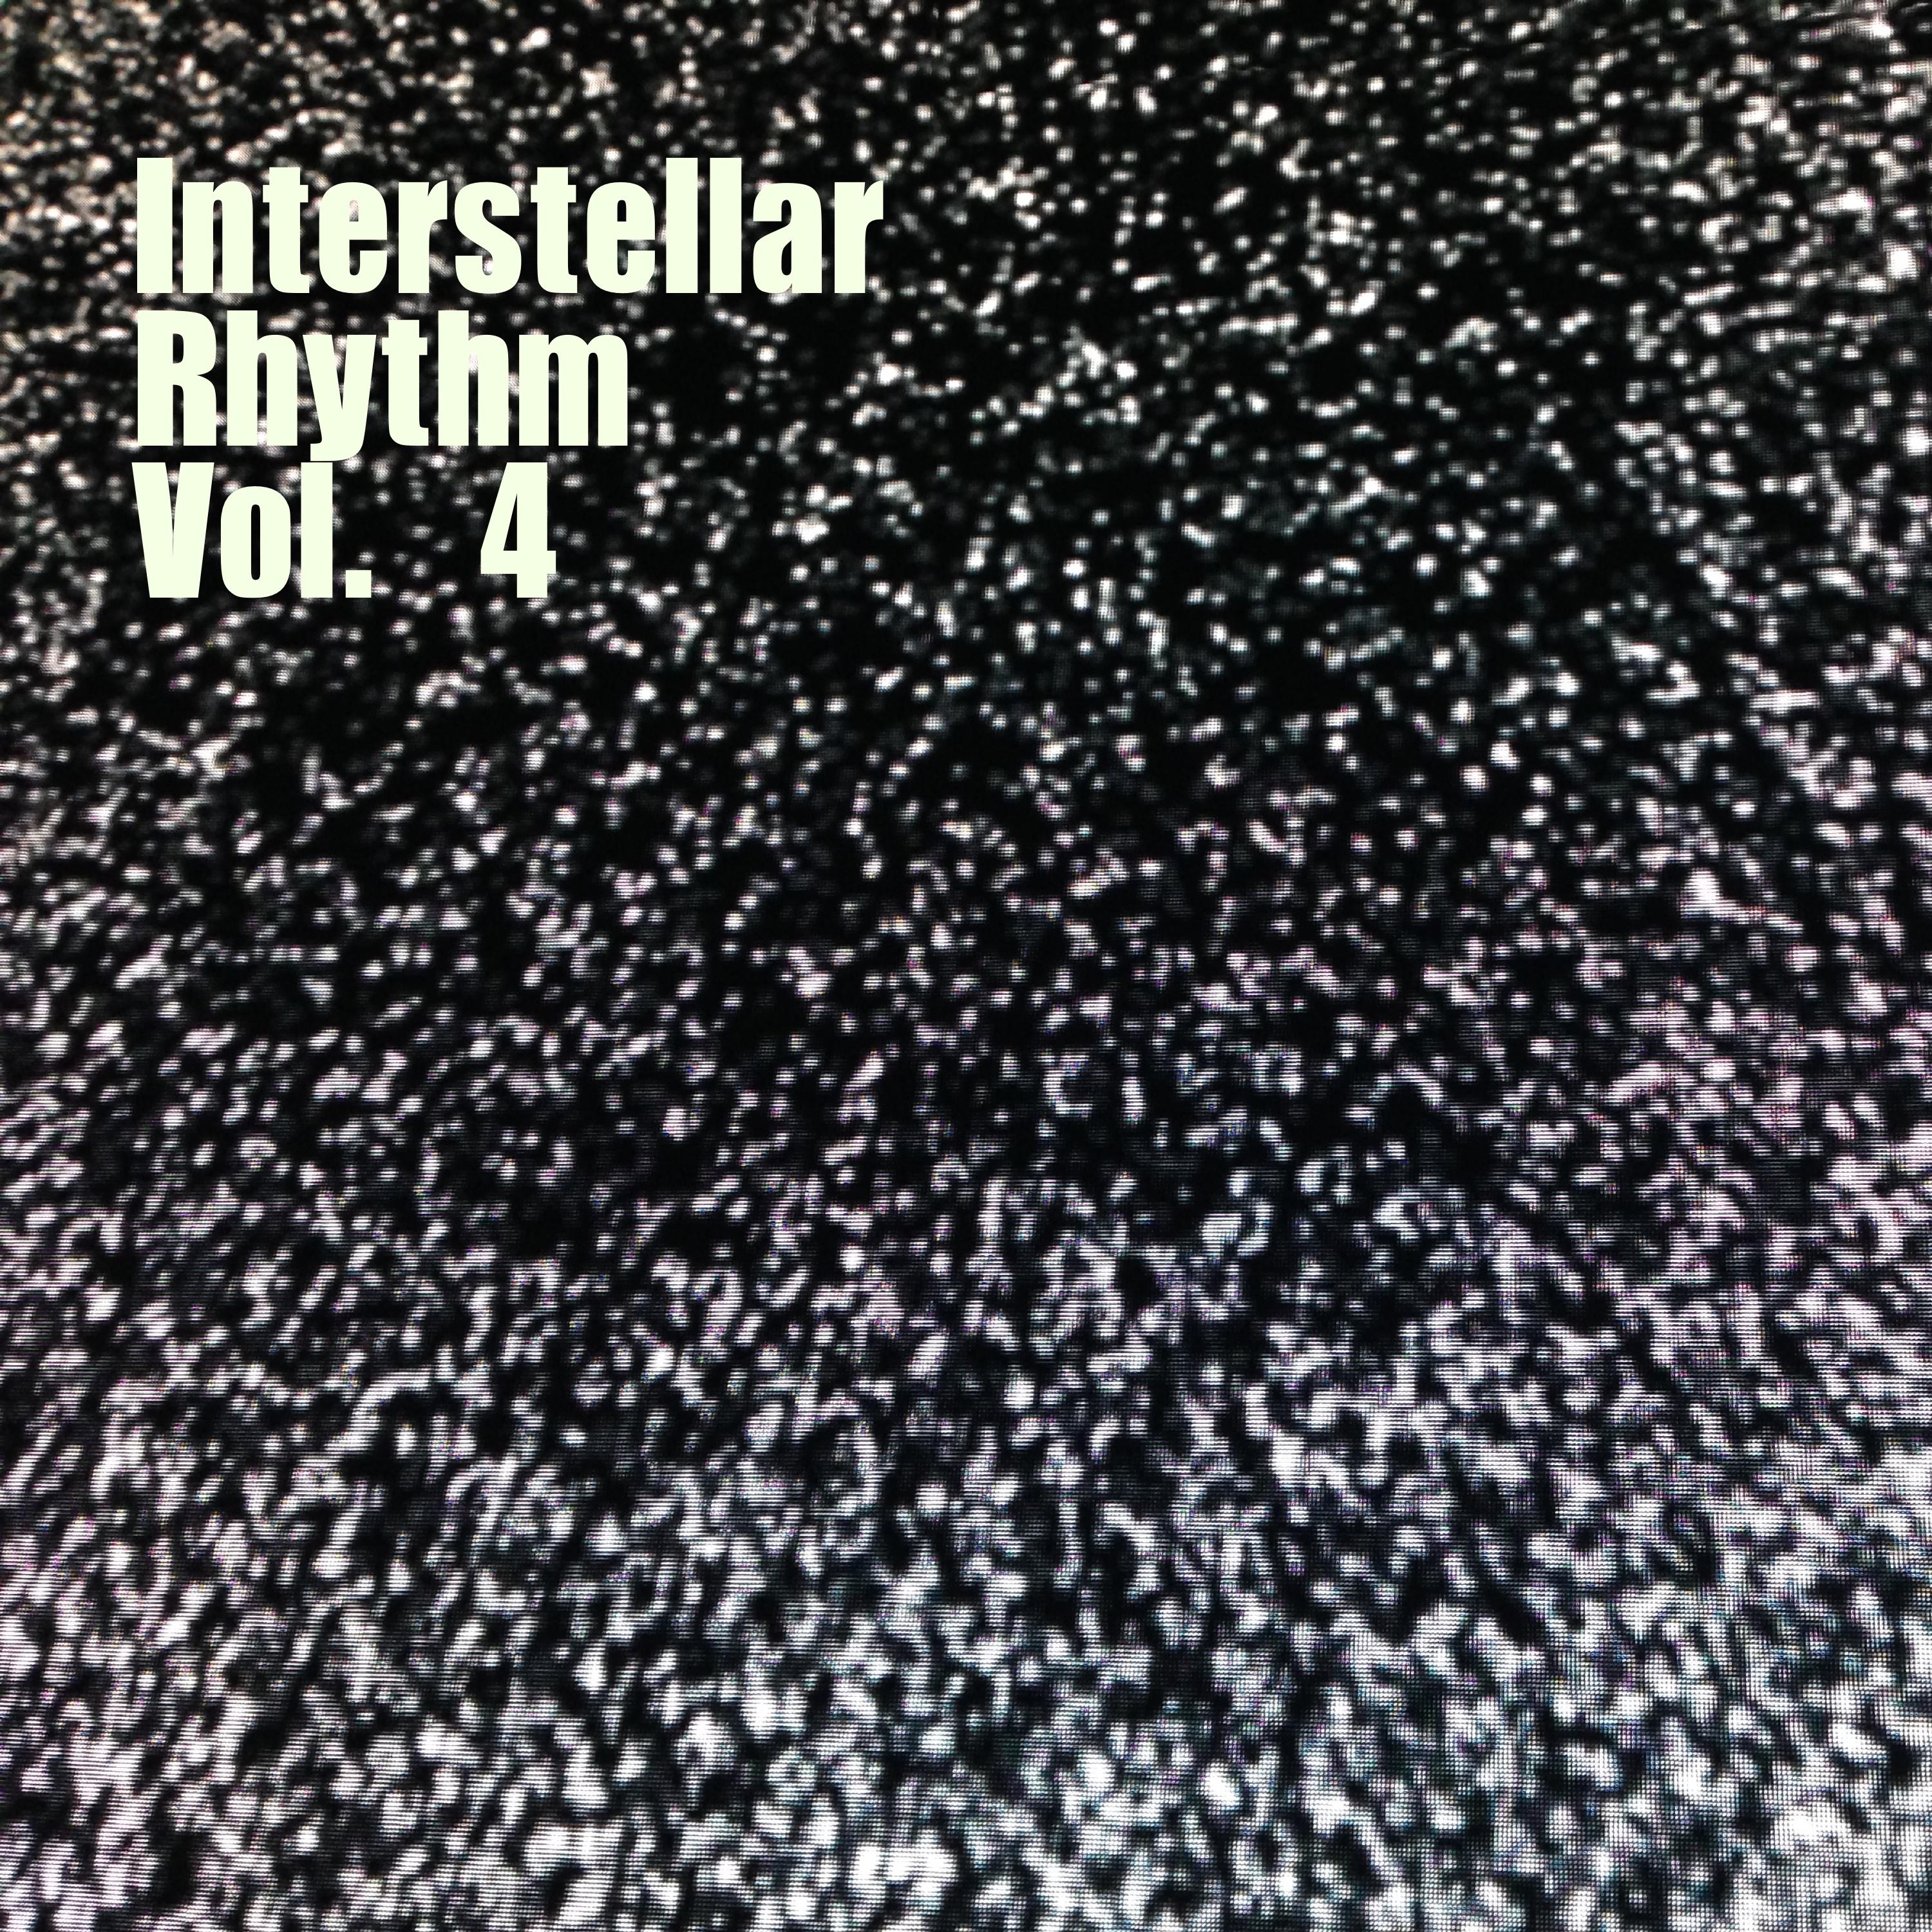 Interstellar Rhythm, Vol. 4